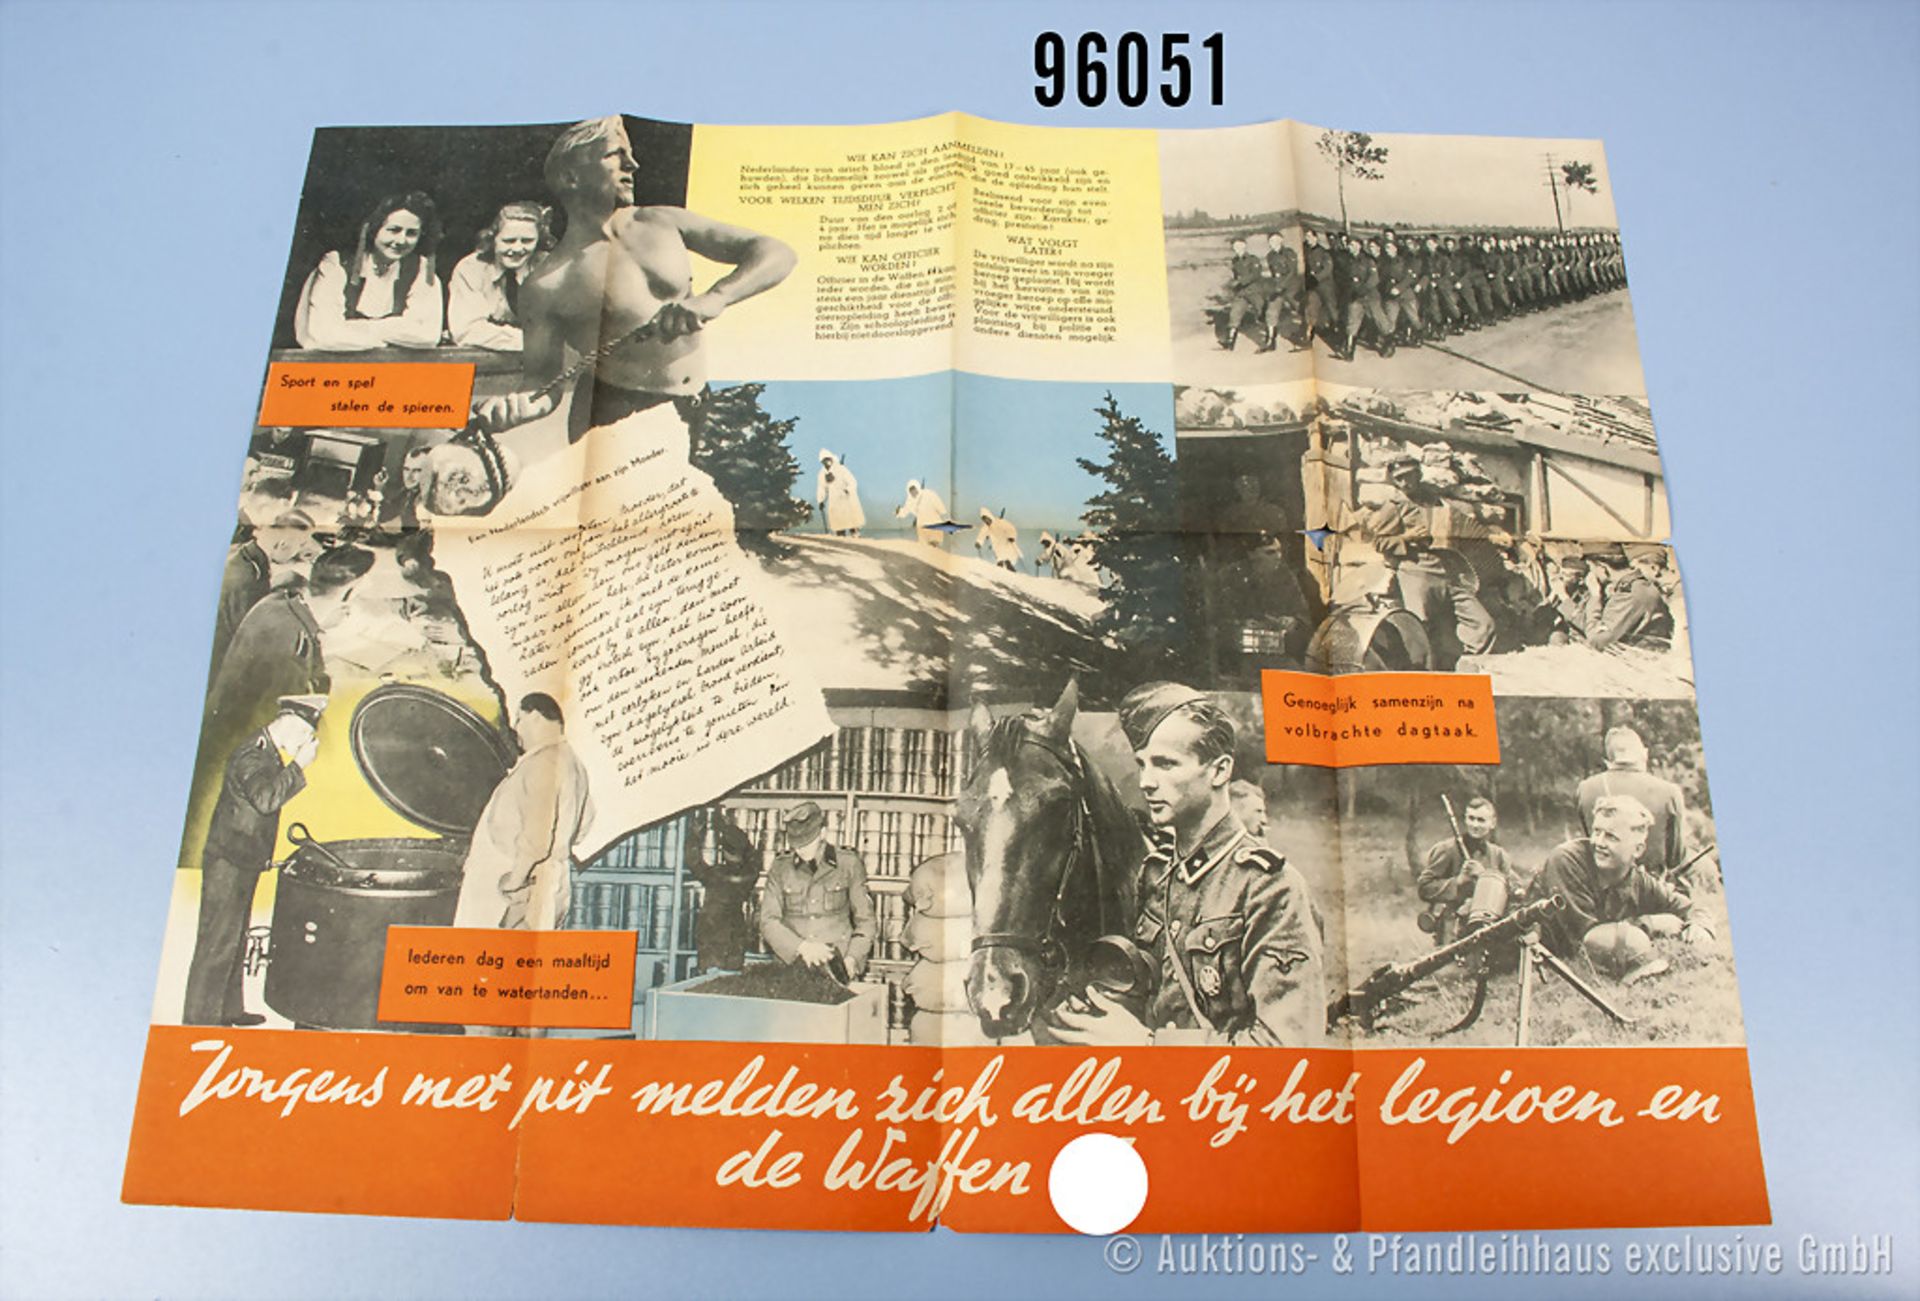 Faltblatt der Waffen-SS in niederländischer Sprache "Dat's 'n leven van stavast", guter Zustand - Bild 2 aus 2